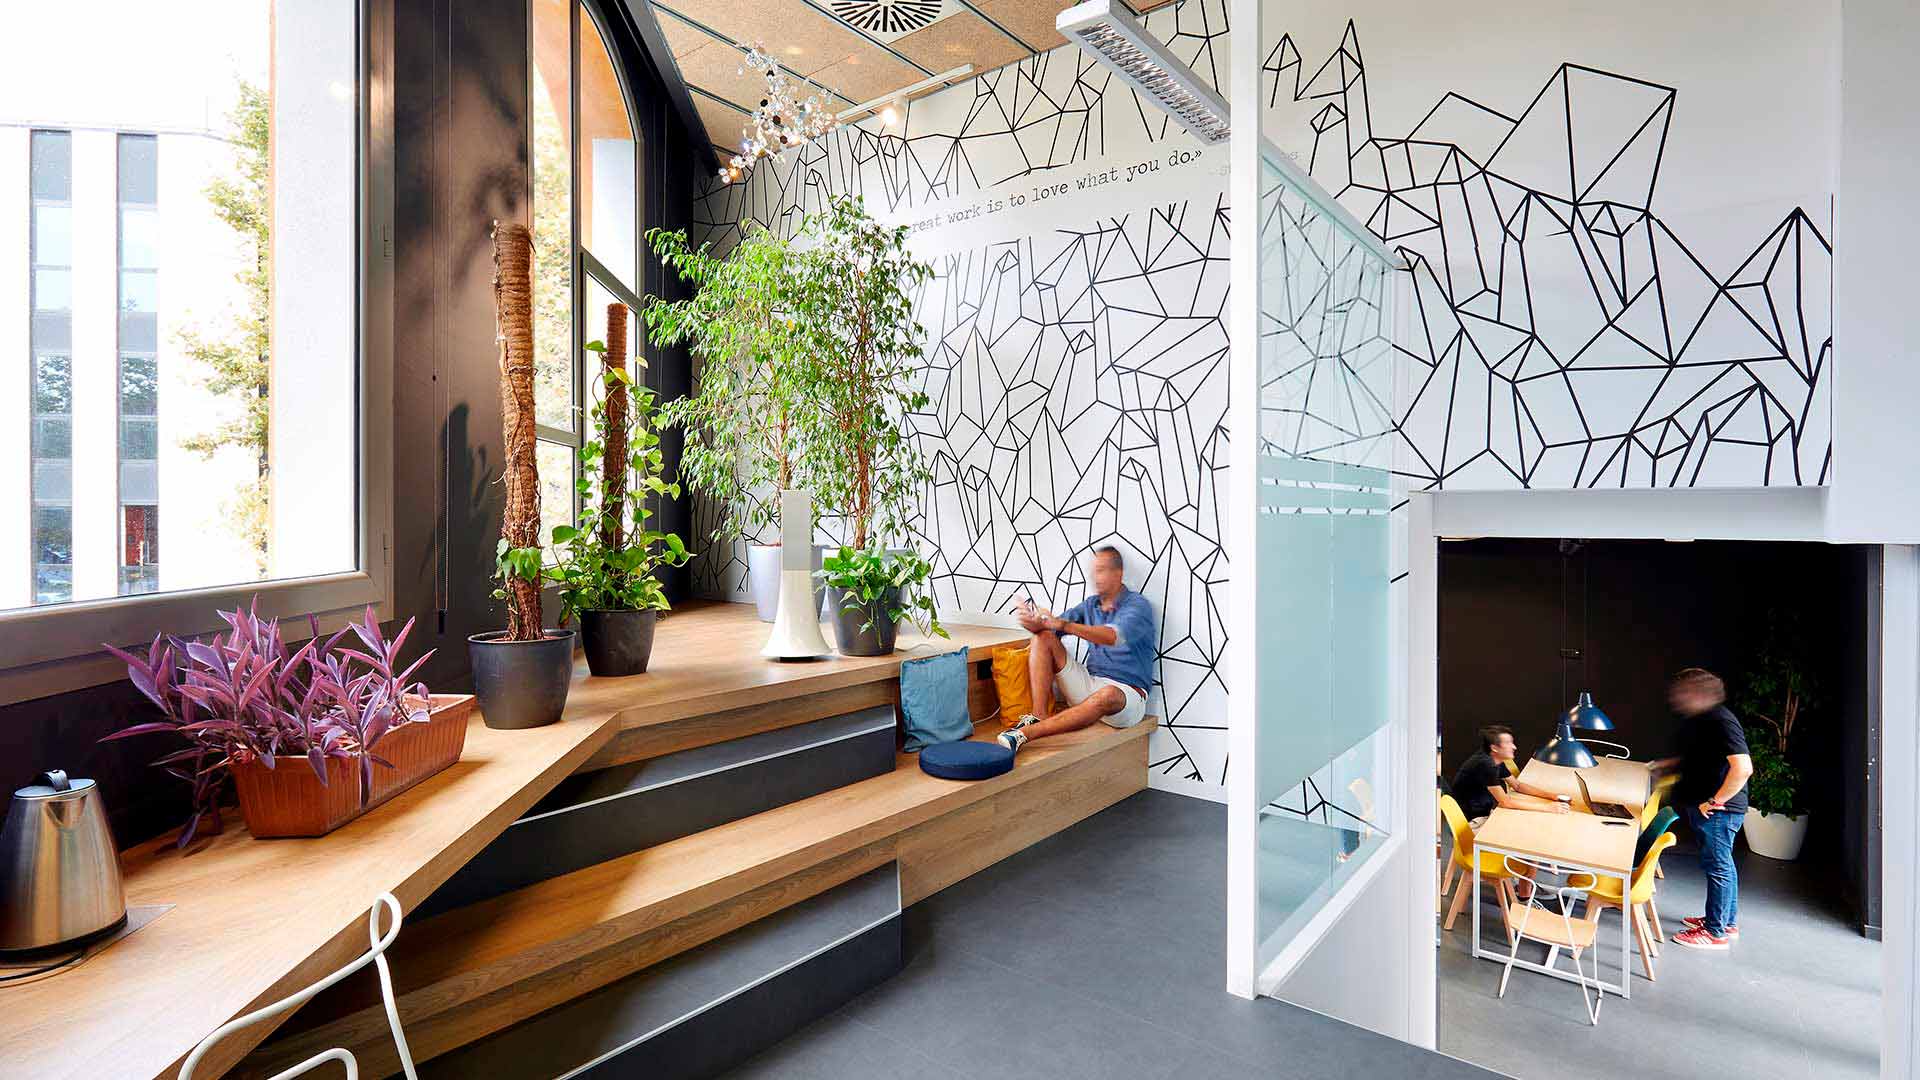 Oficinas corporativas Swarovski, proyecto de diseño por Grup Idea en Barcelona